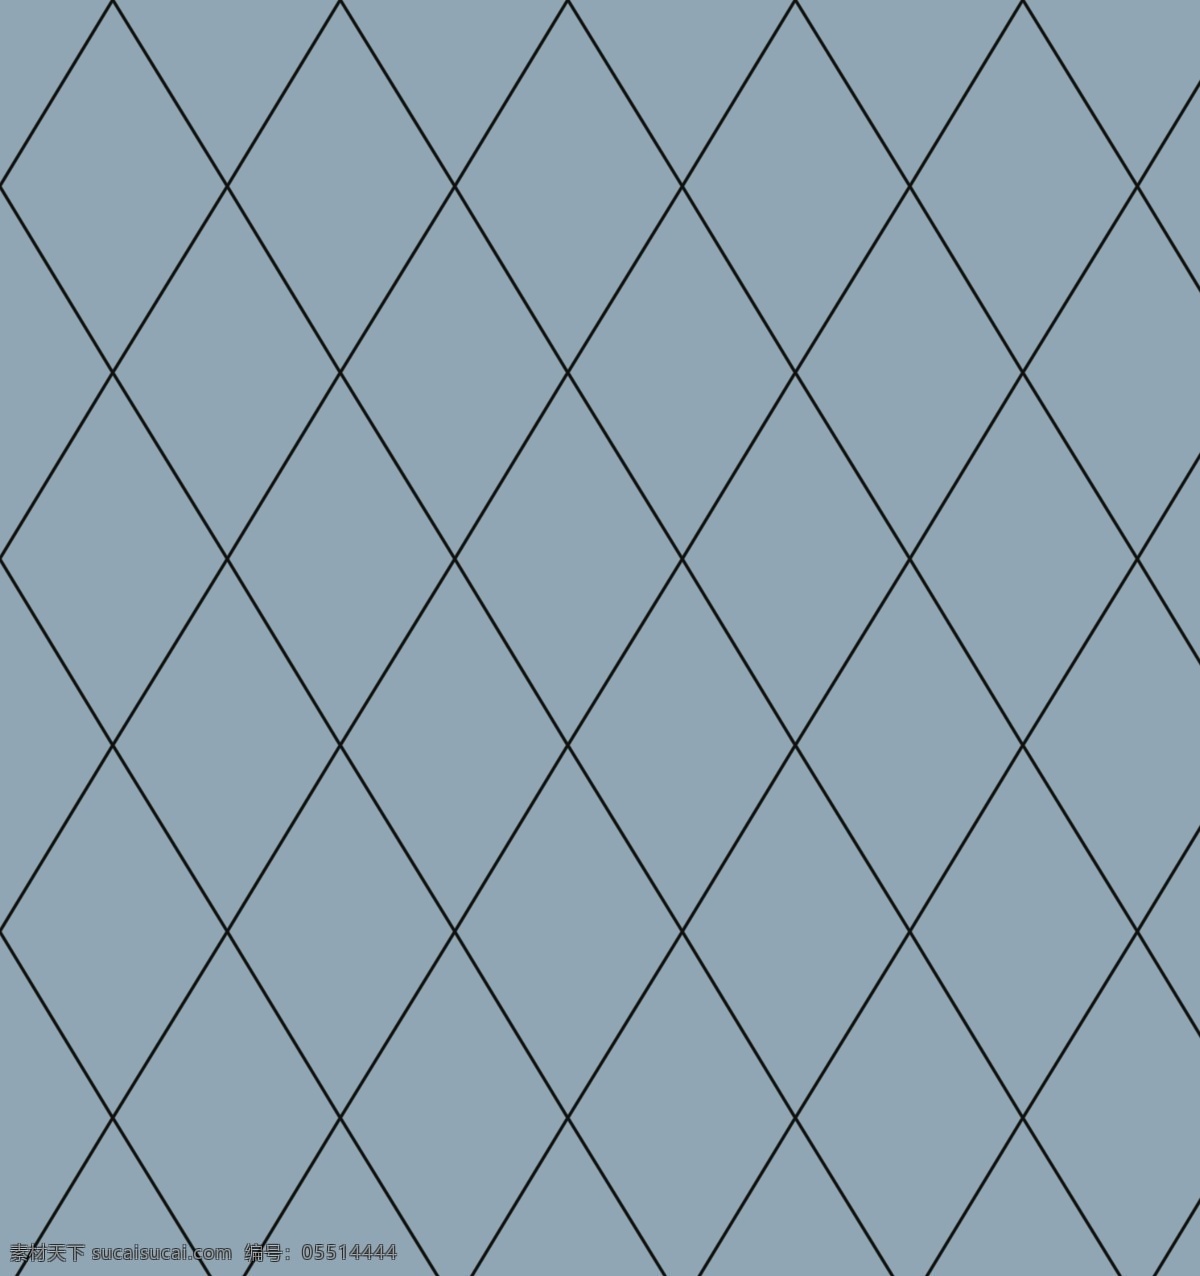 菱形格图片 菱形格 线条 格子 网格 渔网格 数码 卡通 类 分层